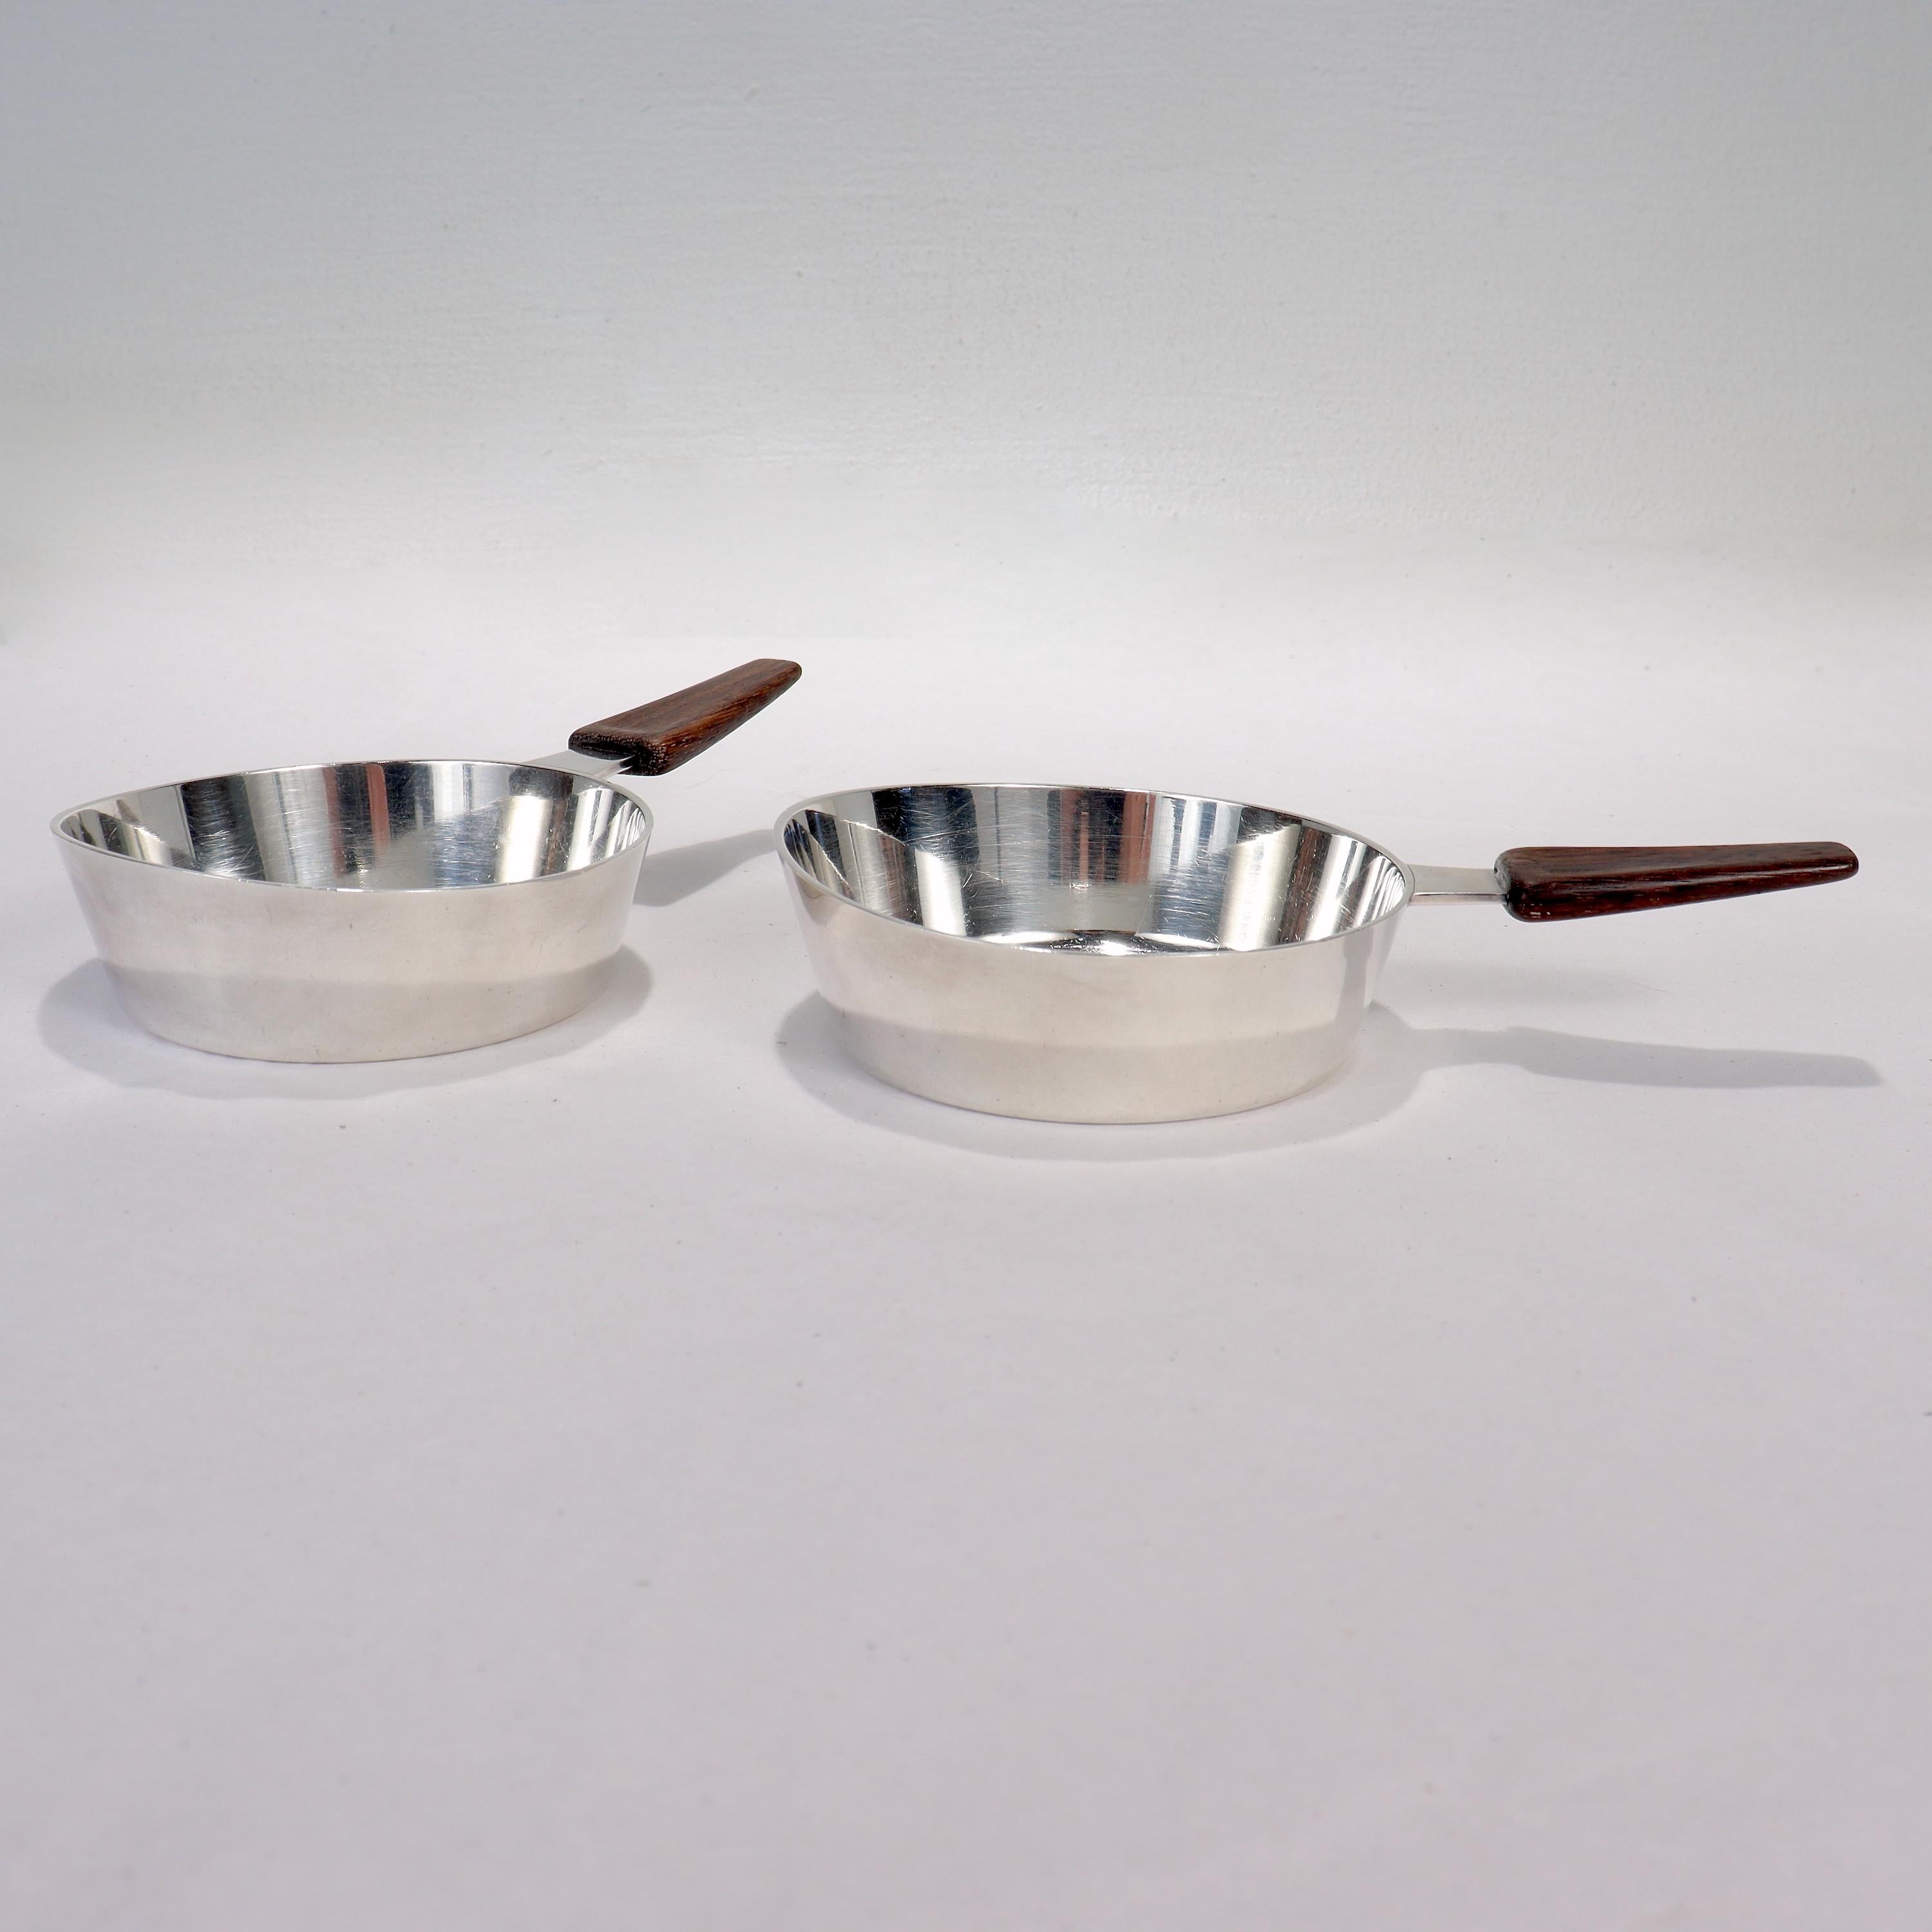 Ein feines Paar von Mid-Century Modern Sterling Silber und Holz behandelt Gerichte.

Möglicherweise als Raclette-Geschirr konzipiert, ähneln die Stücke kleinen Pfännchen. Perfekt heutzutage als Schalen für ein modernistisches Cocktail-Tablett oder